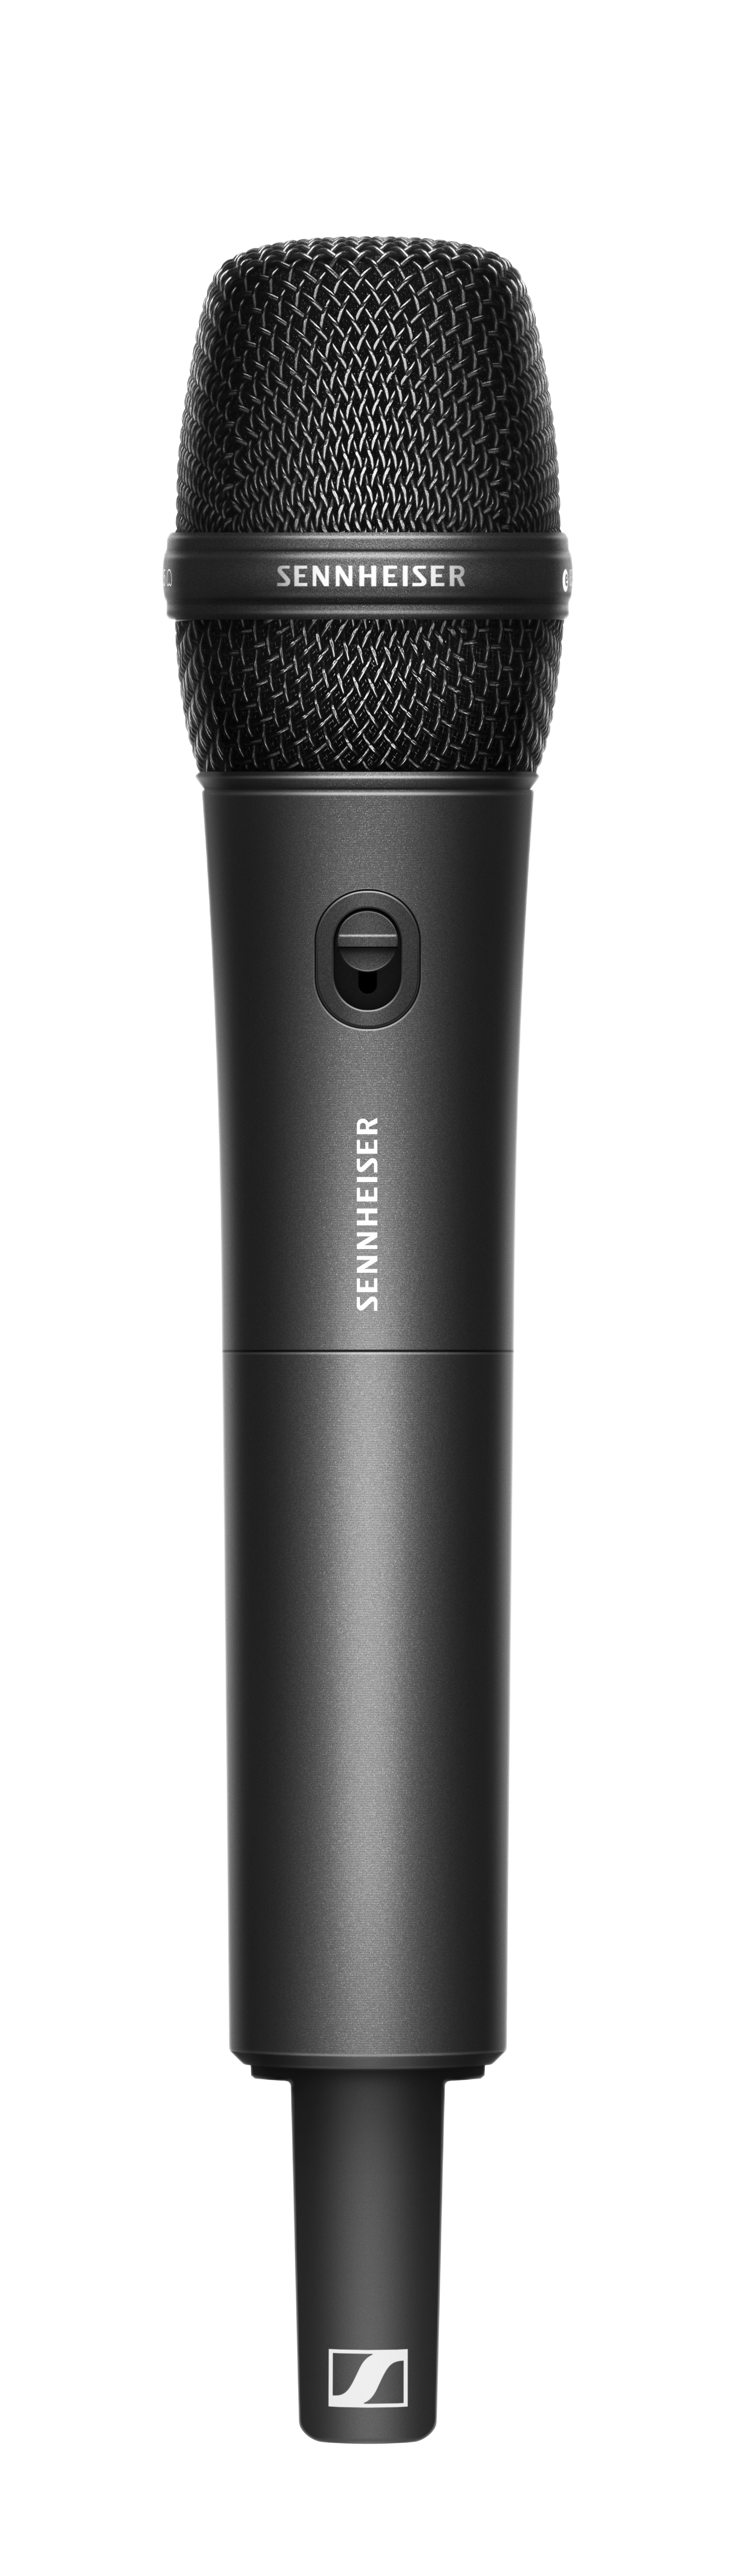 Wireless microphone system EW-DP 835 Set | Sennheiser - Sennheiser